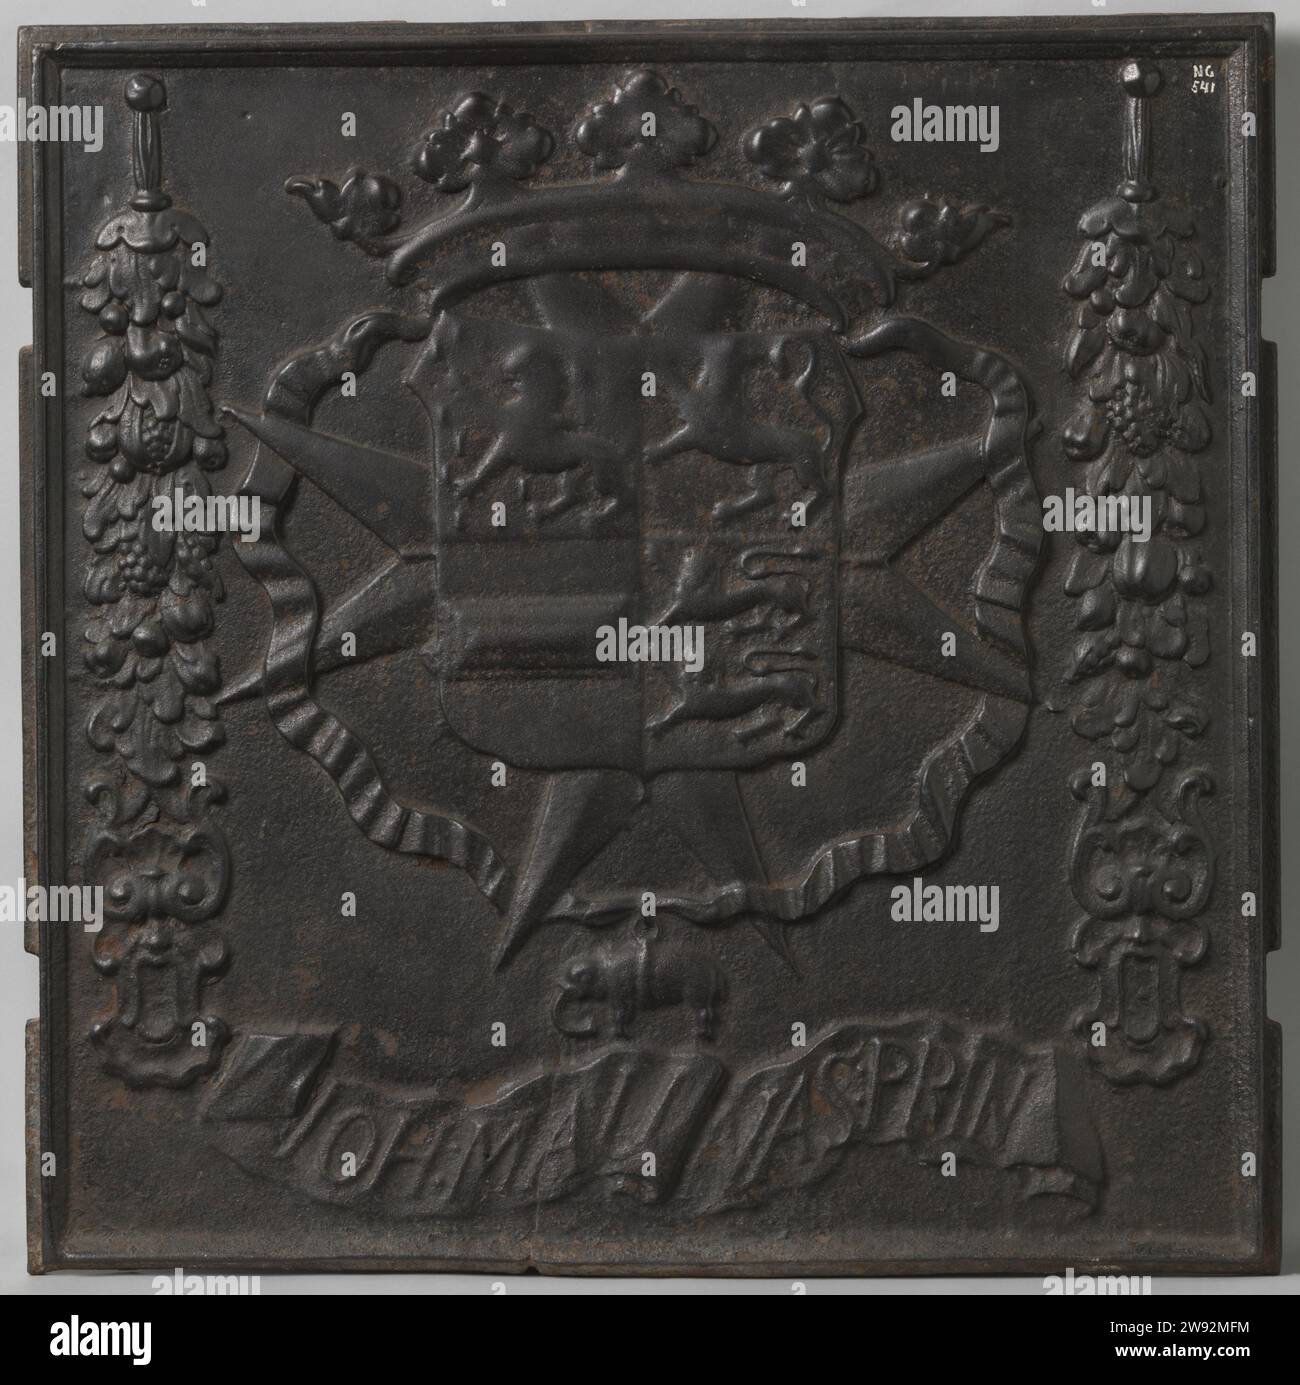 Piastra di cottura con arma Johan Maurits van Nassau-Siegen, Anonymous, c. 1654 - c. 1679 piastra di cottura quasi rettangolare con bordo rialzato e due tacche sul lato sinistro e destro (per il fissaggio alla stufa); centrale Immagine dell'arma con quattro quarti (da Johan Maurits van Nassau-Siegen), coronata da una corona reale a cinque foglie, adagiata sul Johannieterkruis a otto punte; l'arma è circondata da un nastro, sul quale un elefante pende sul fondo (segno dell'ordine degli elefanti), usato a sinistra; sotto l'arma banderol con l'iscrizione: IOH: Mau NAS: prin. Fusione del ferro (metallo) per la Germania Foto Stock